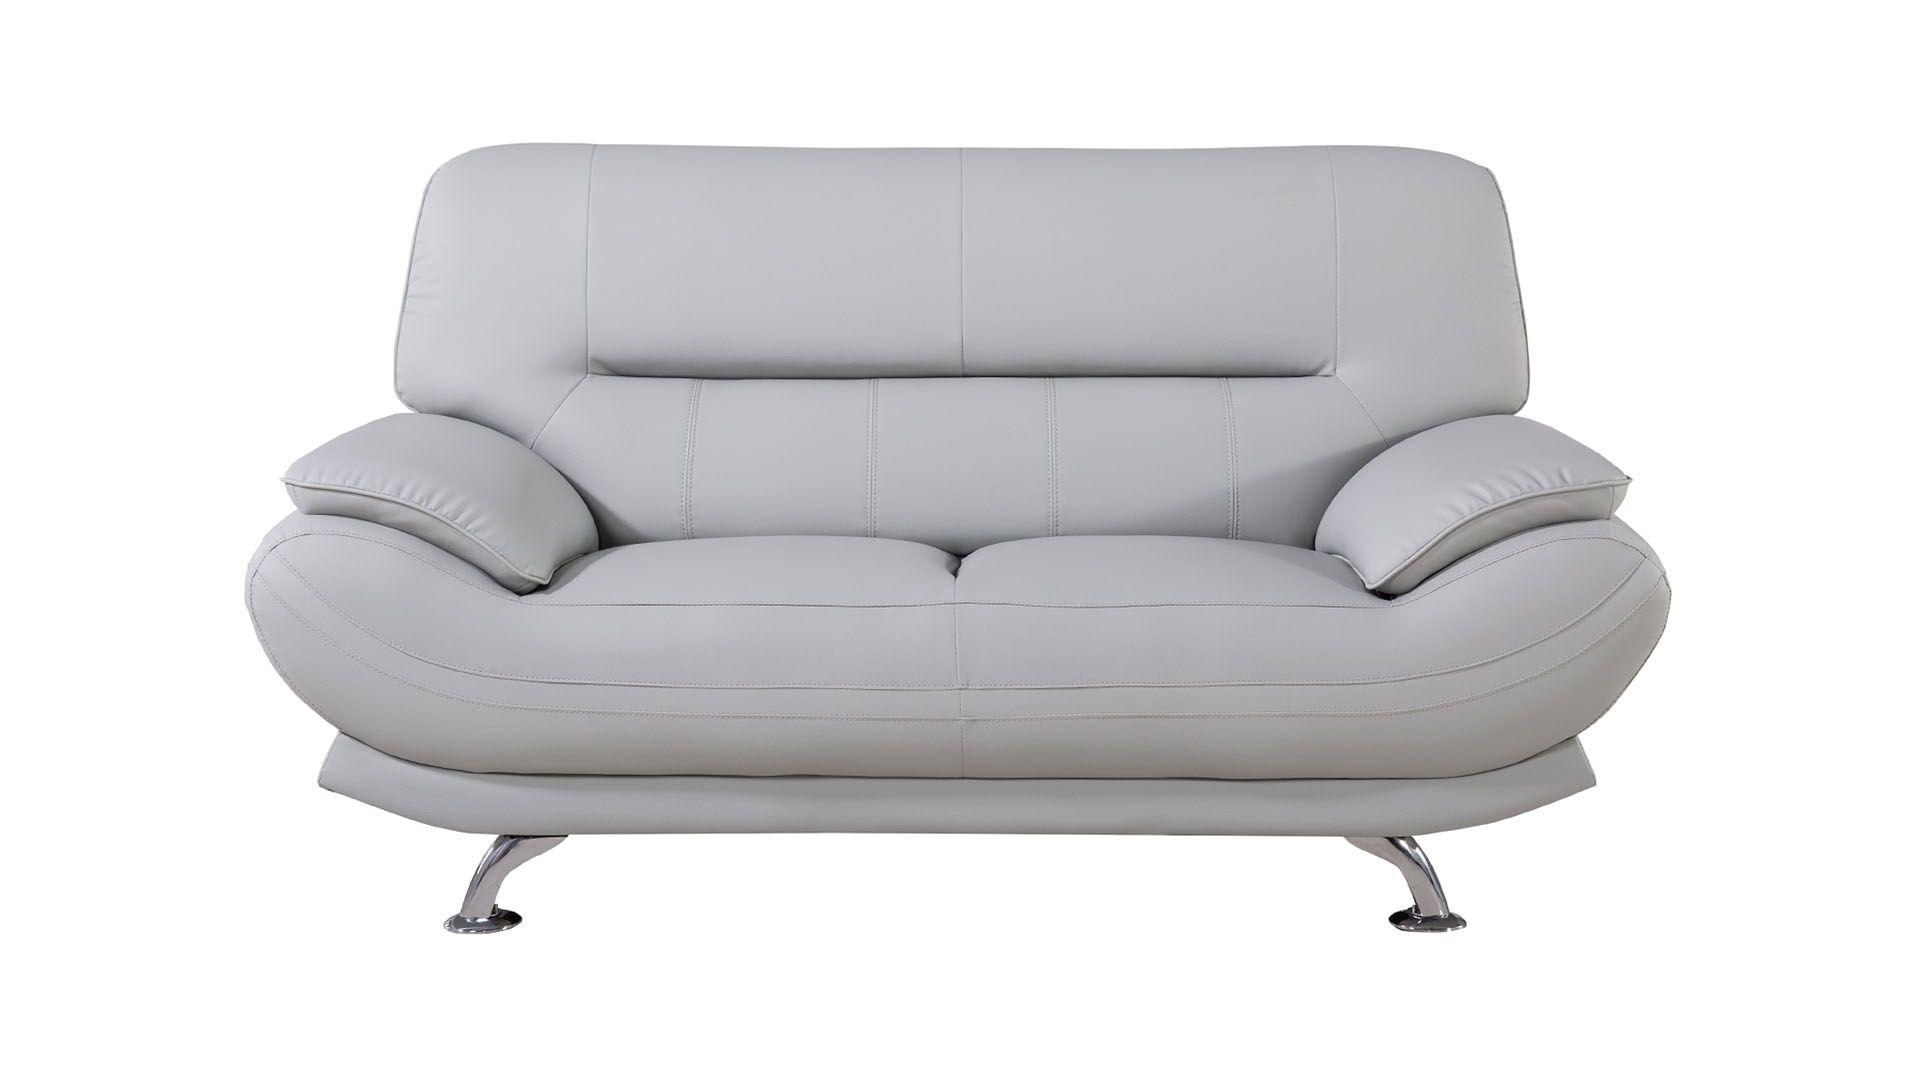 

    
AE709-LG-3PC American Eagle Furniture Sofa Set
